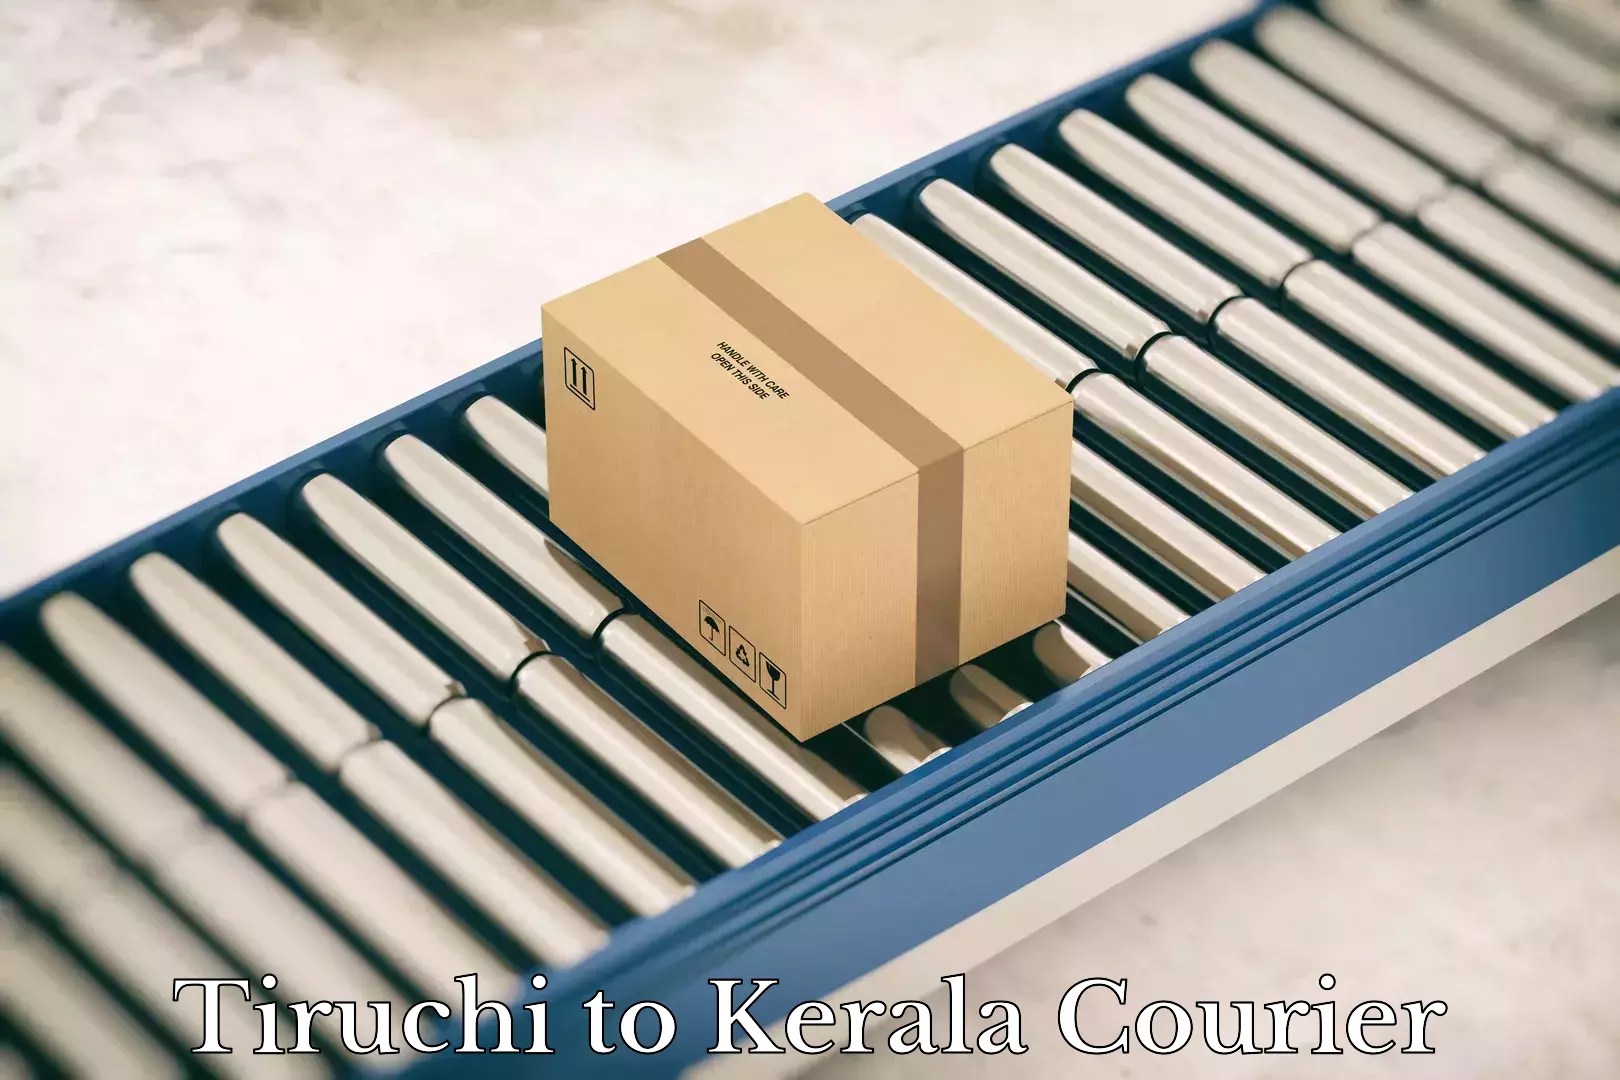 Customer-centric shipping Tiruchi to Kerala